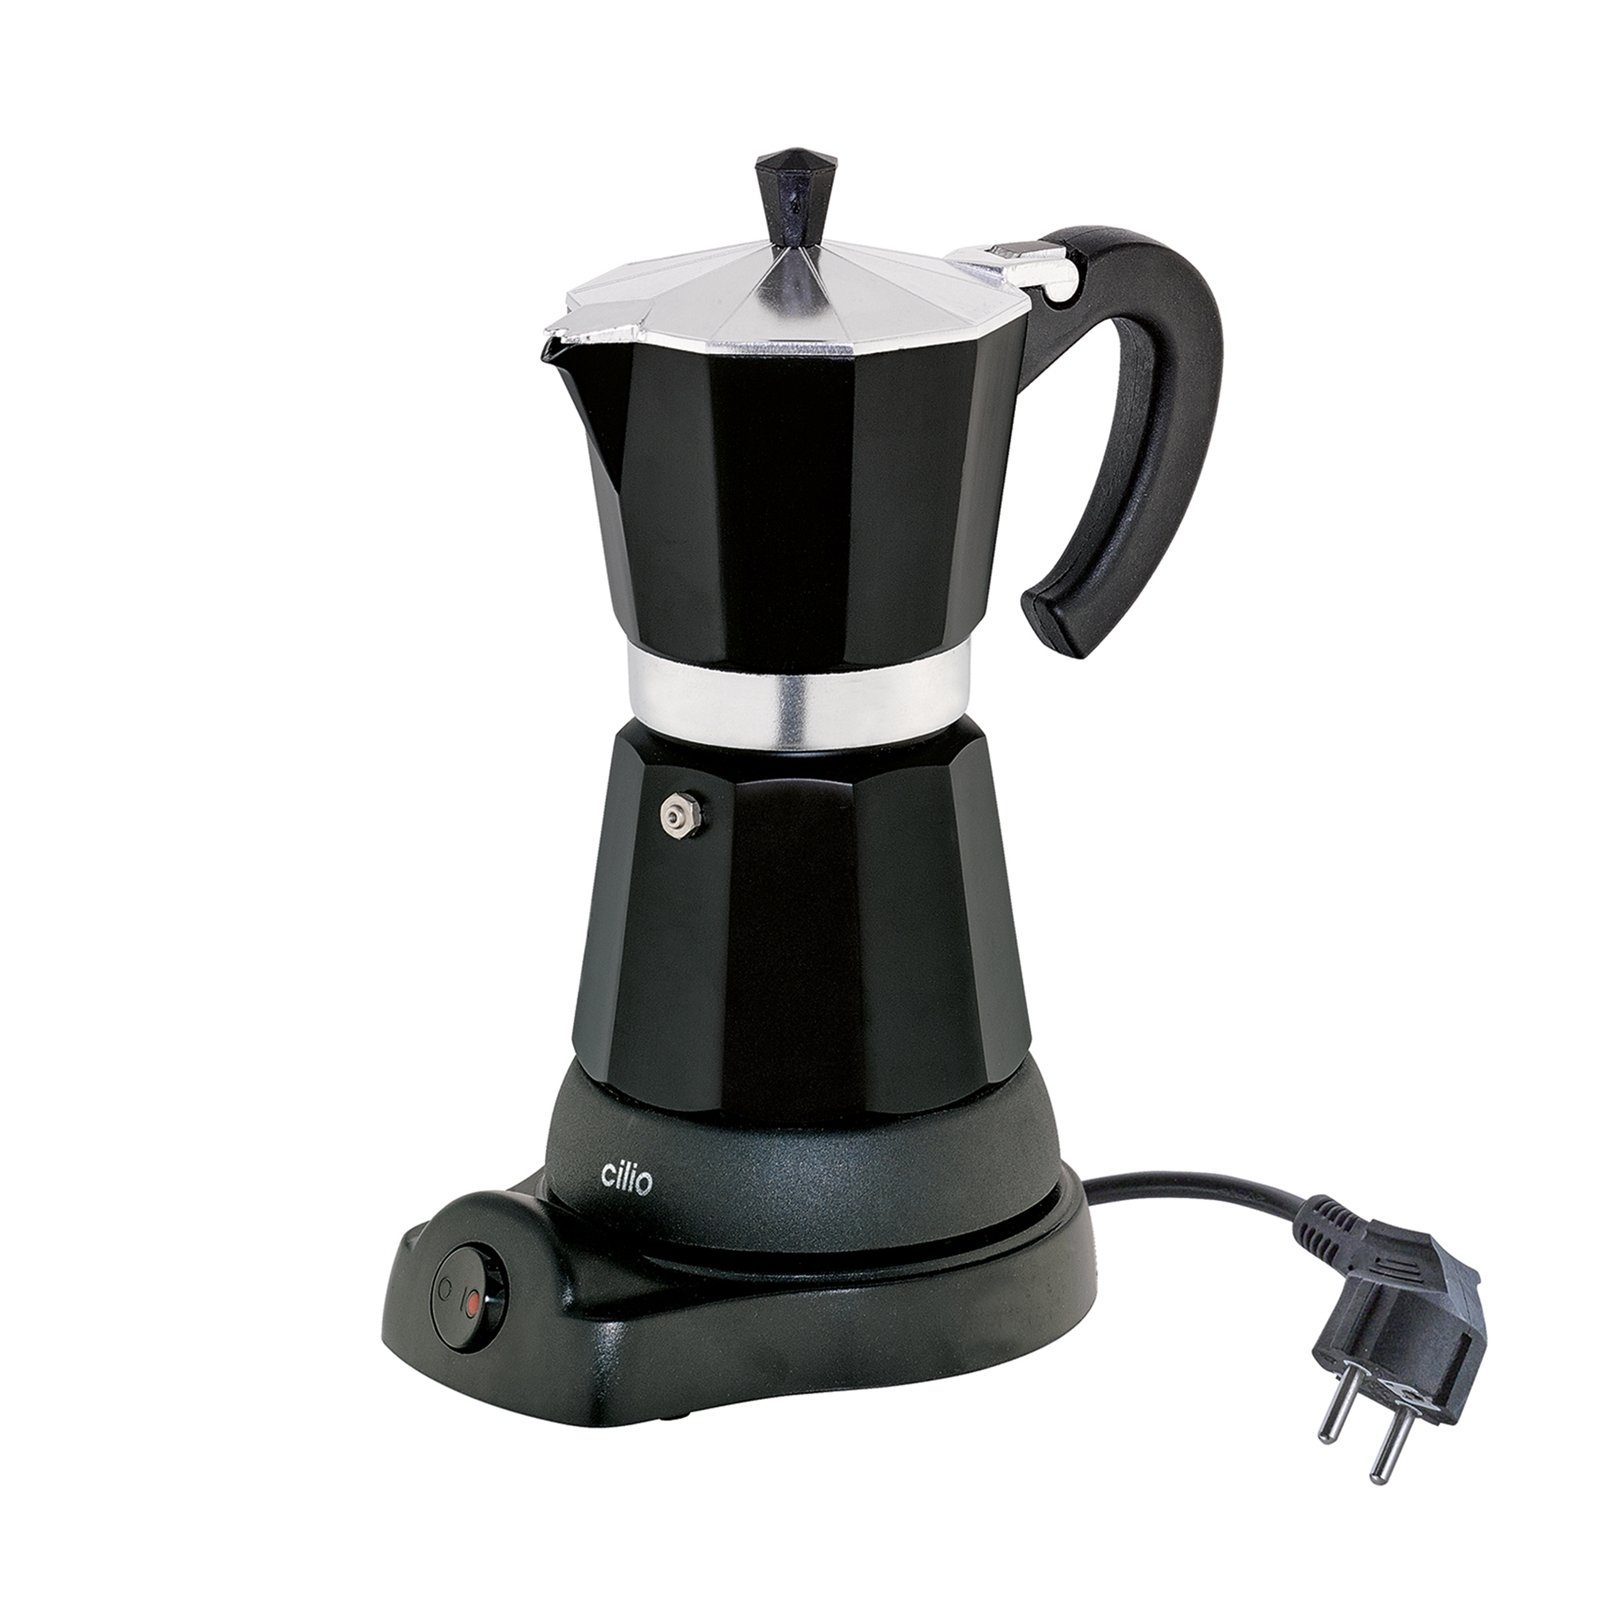 Cilio Espressokocher Elektrischer Espressokocher CLASSICO, mit Warmhaltefunktion, kabelloser Zentralkontakt